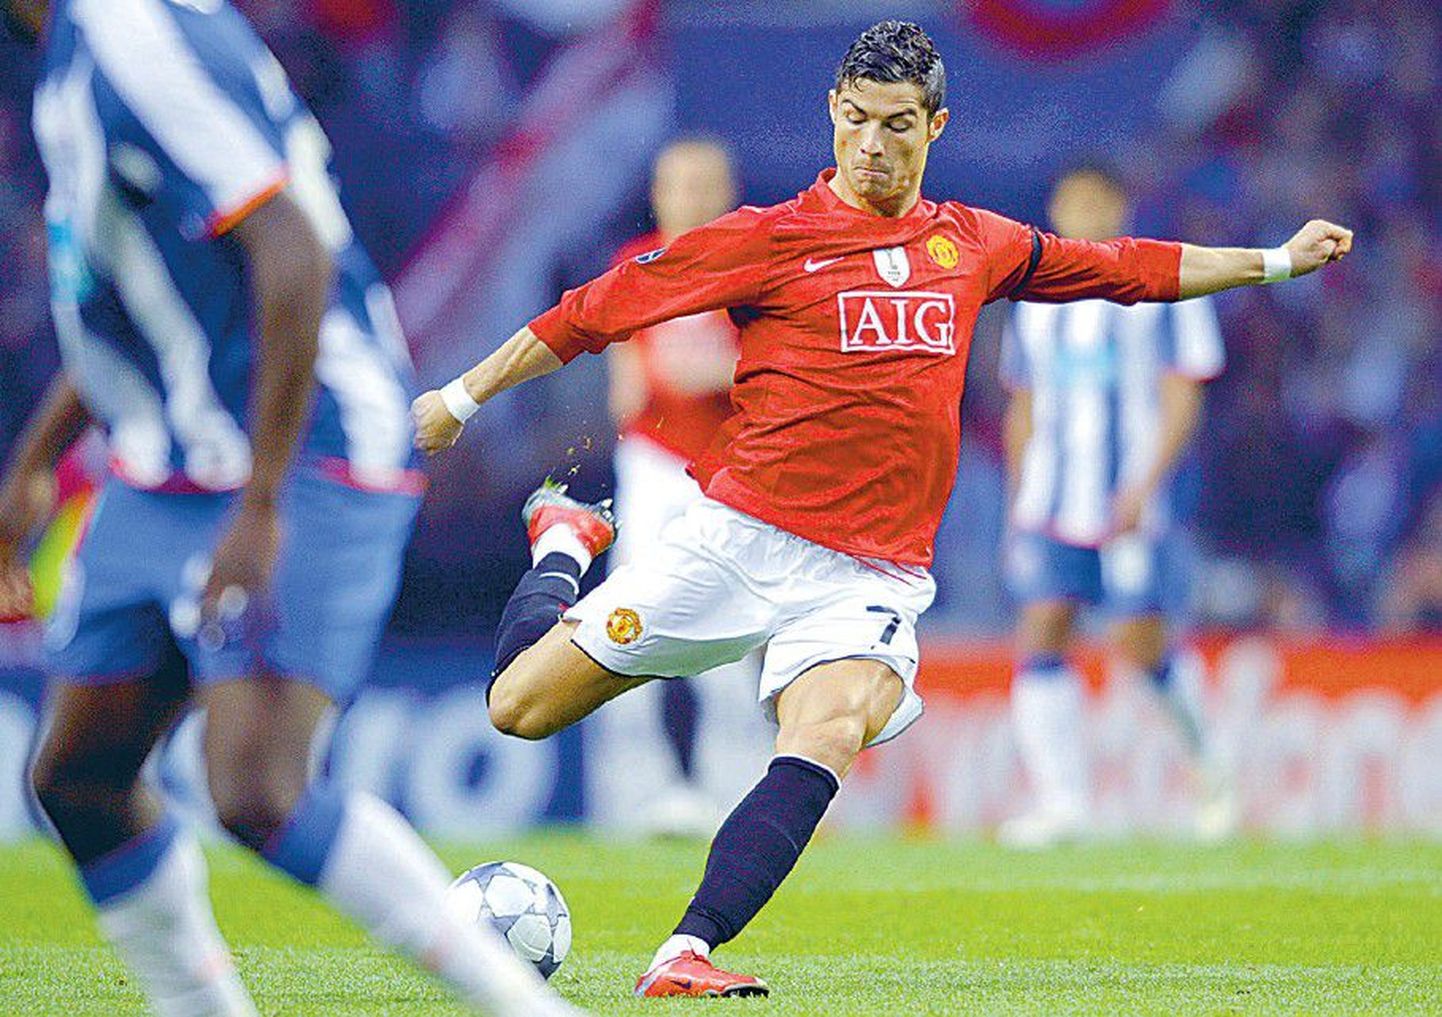 Cristiano Ronaldo poolt 6. minutil teele saadetud kaugpomm viia Manchester Unitedi Meistrite liiga poolfinaali, kus tuleb vastu võtta kodune konkurent Londoni Arsenal.